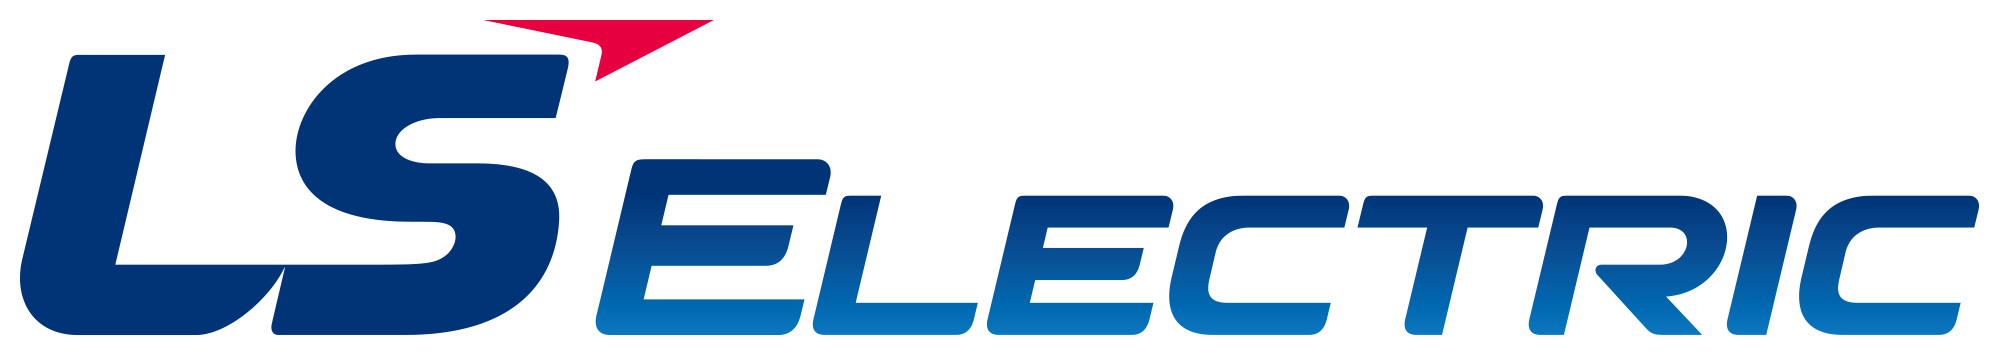 LS ELECTRIC | Електронні компоненти. Дистриб'ютор і магазин онлайн - Transfer Multisort Elektronik